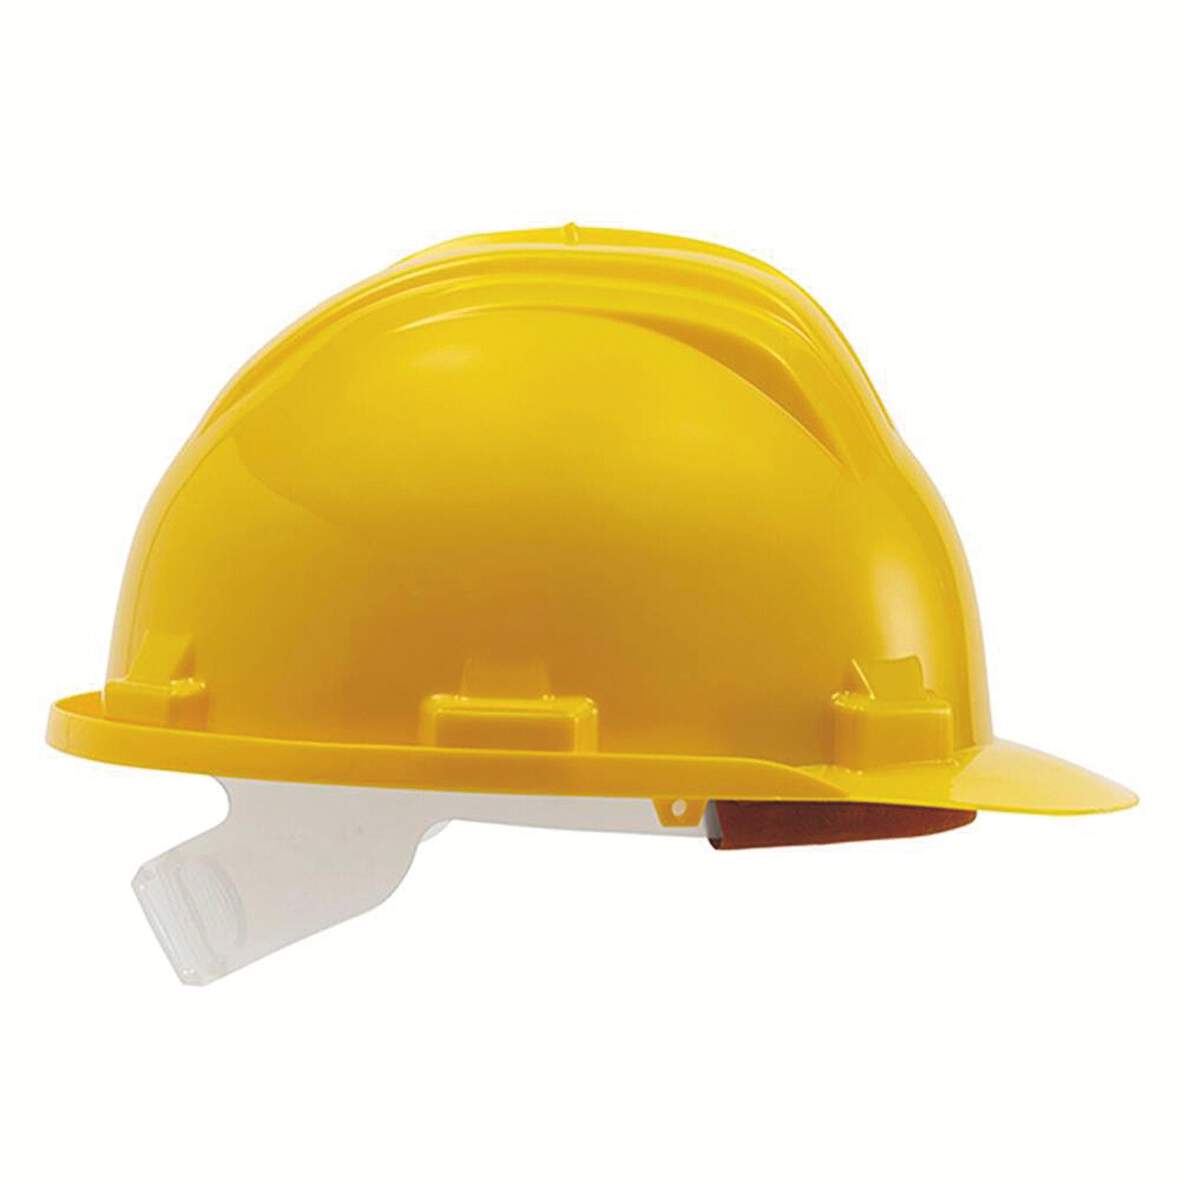 1245918 - Bauschutz-Helm gelb Modell Bau